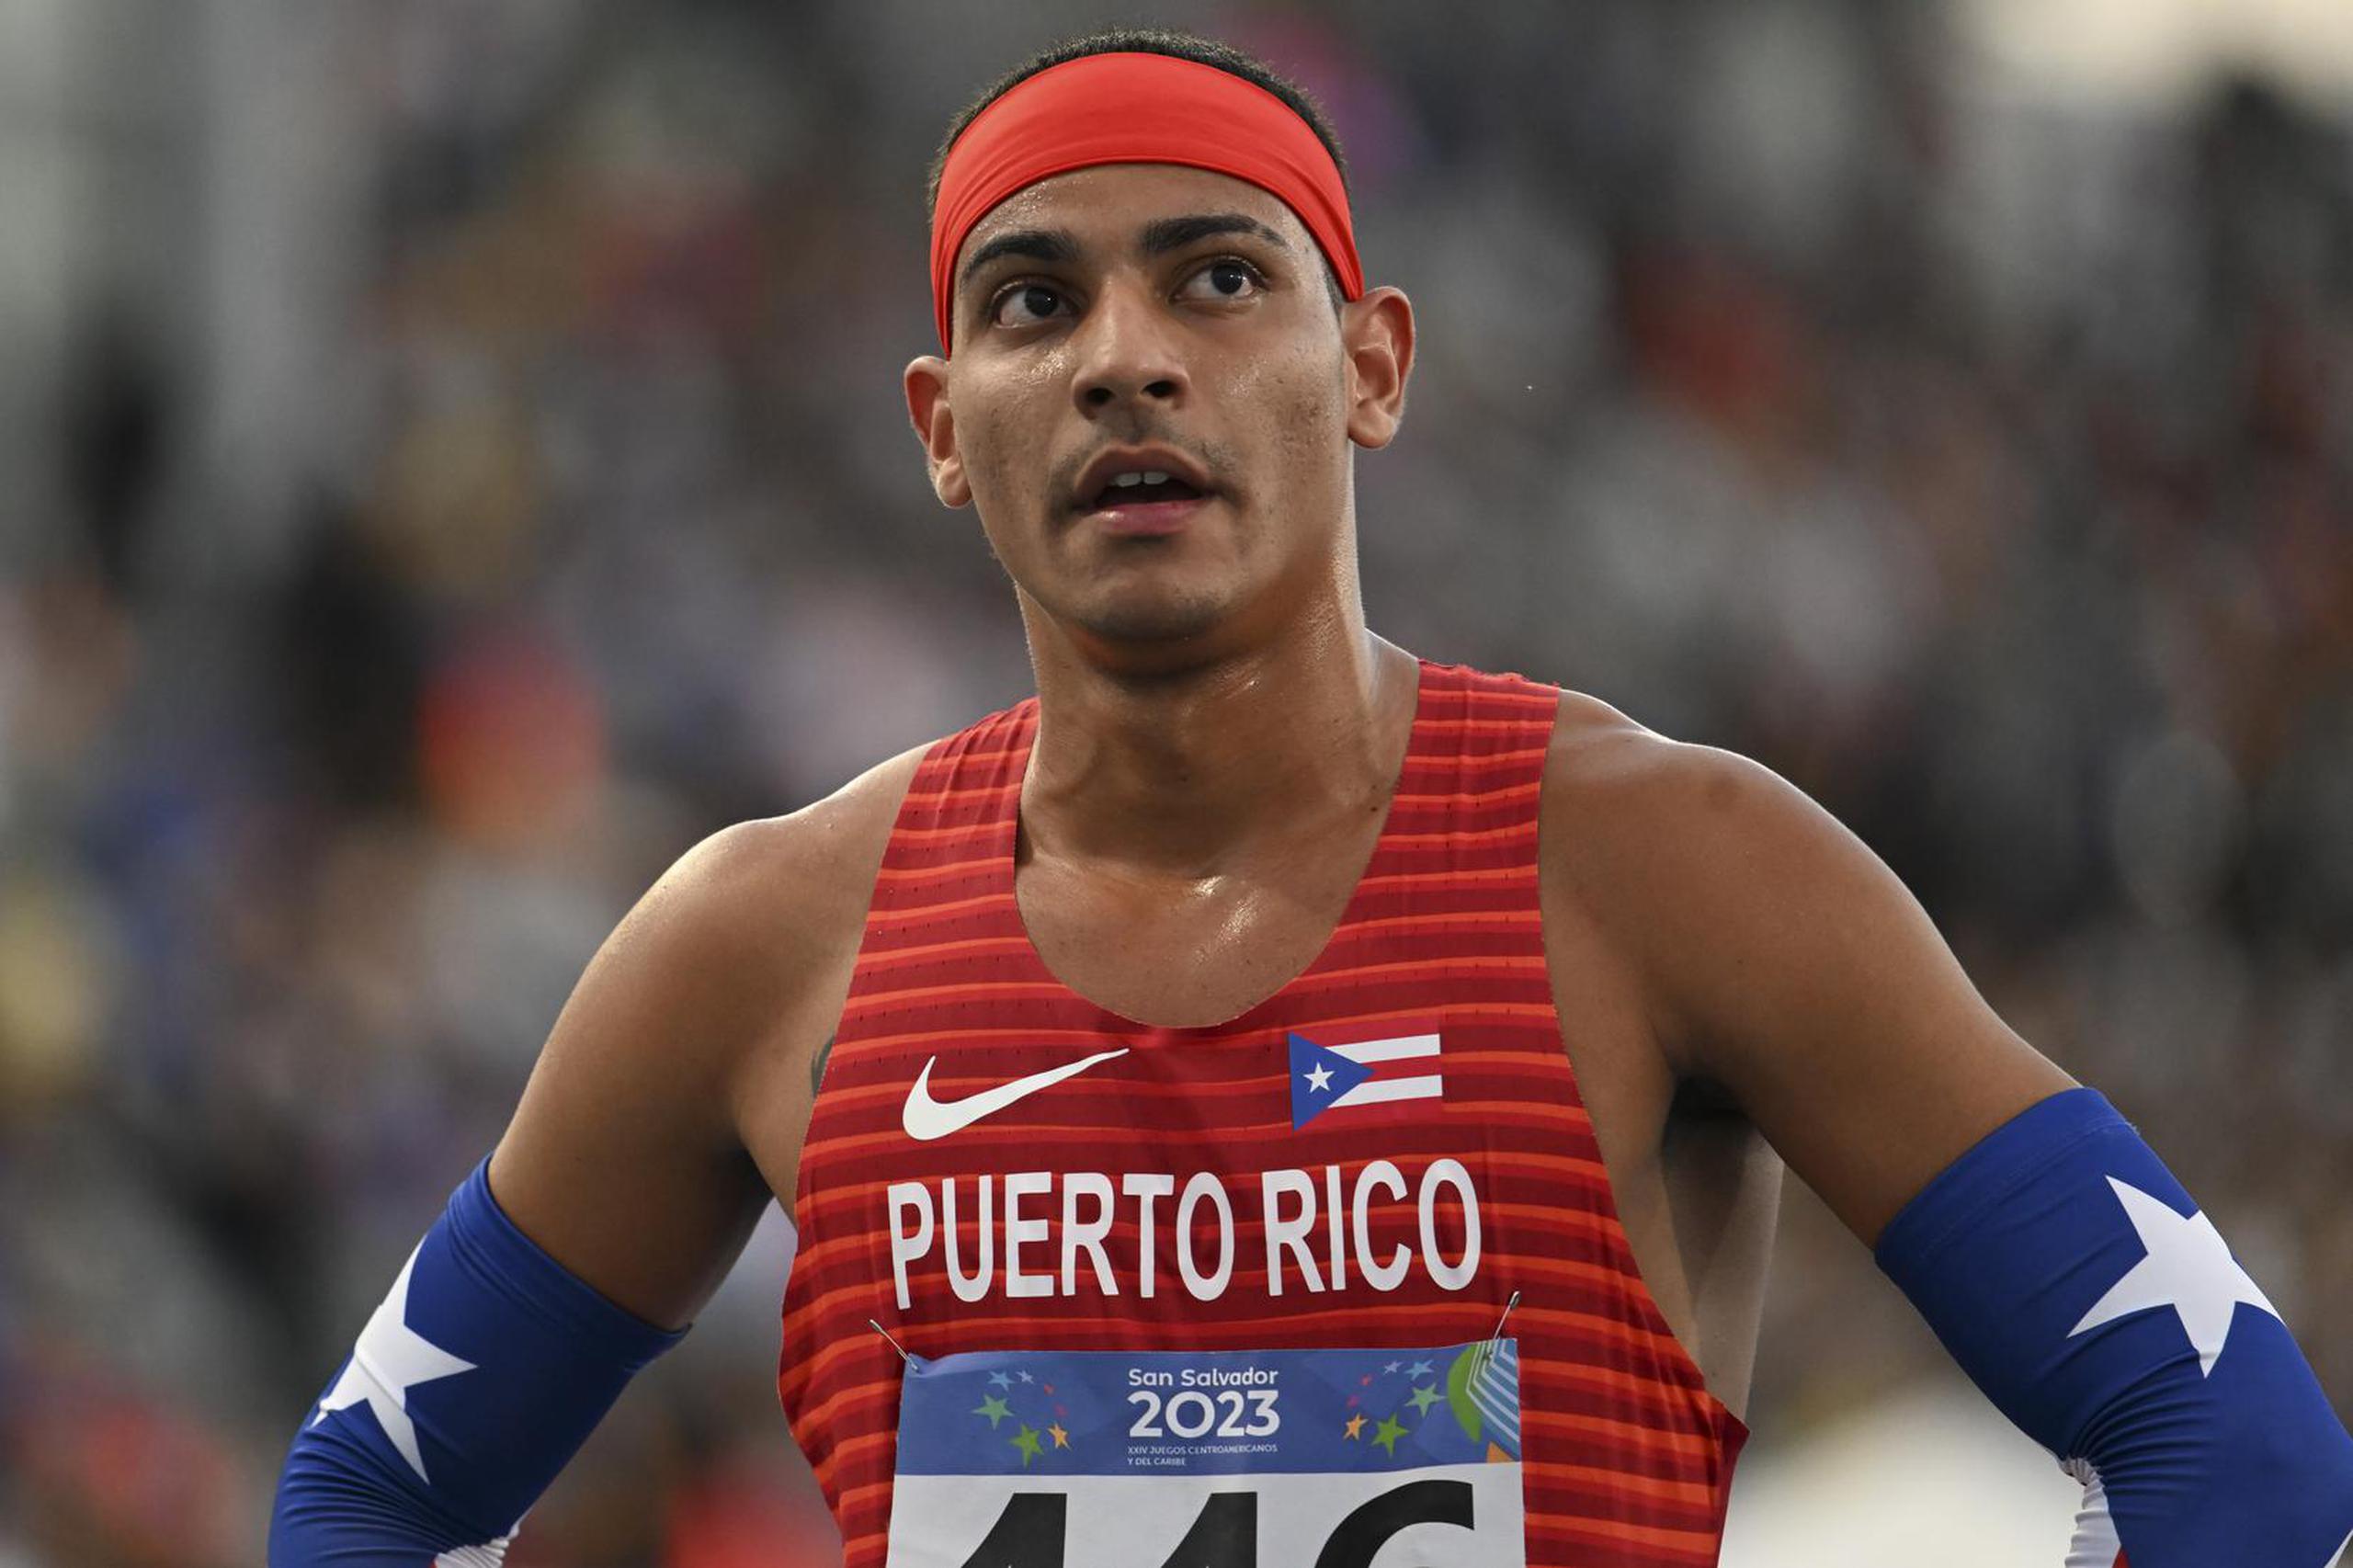 El DAR ya recomendó favorablemente la participación en Santiago 2023 de 124 atletas, entre los que podría estar el corredor de 800 metros, Ryan Sánchez.